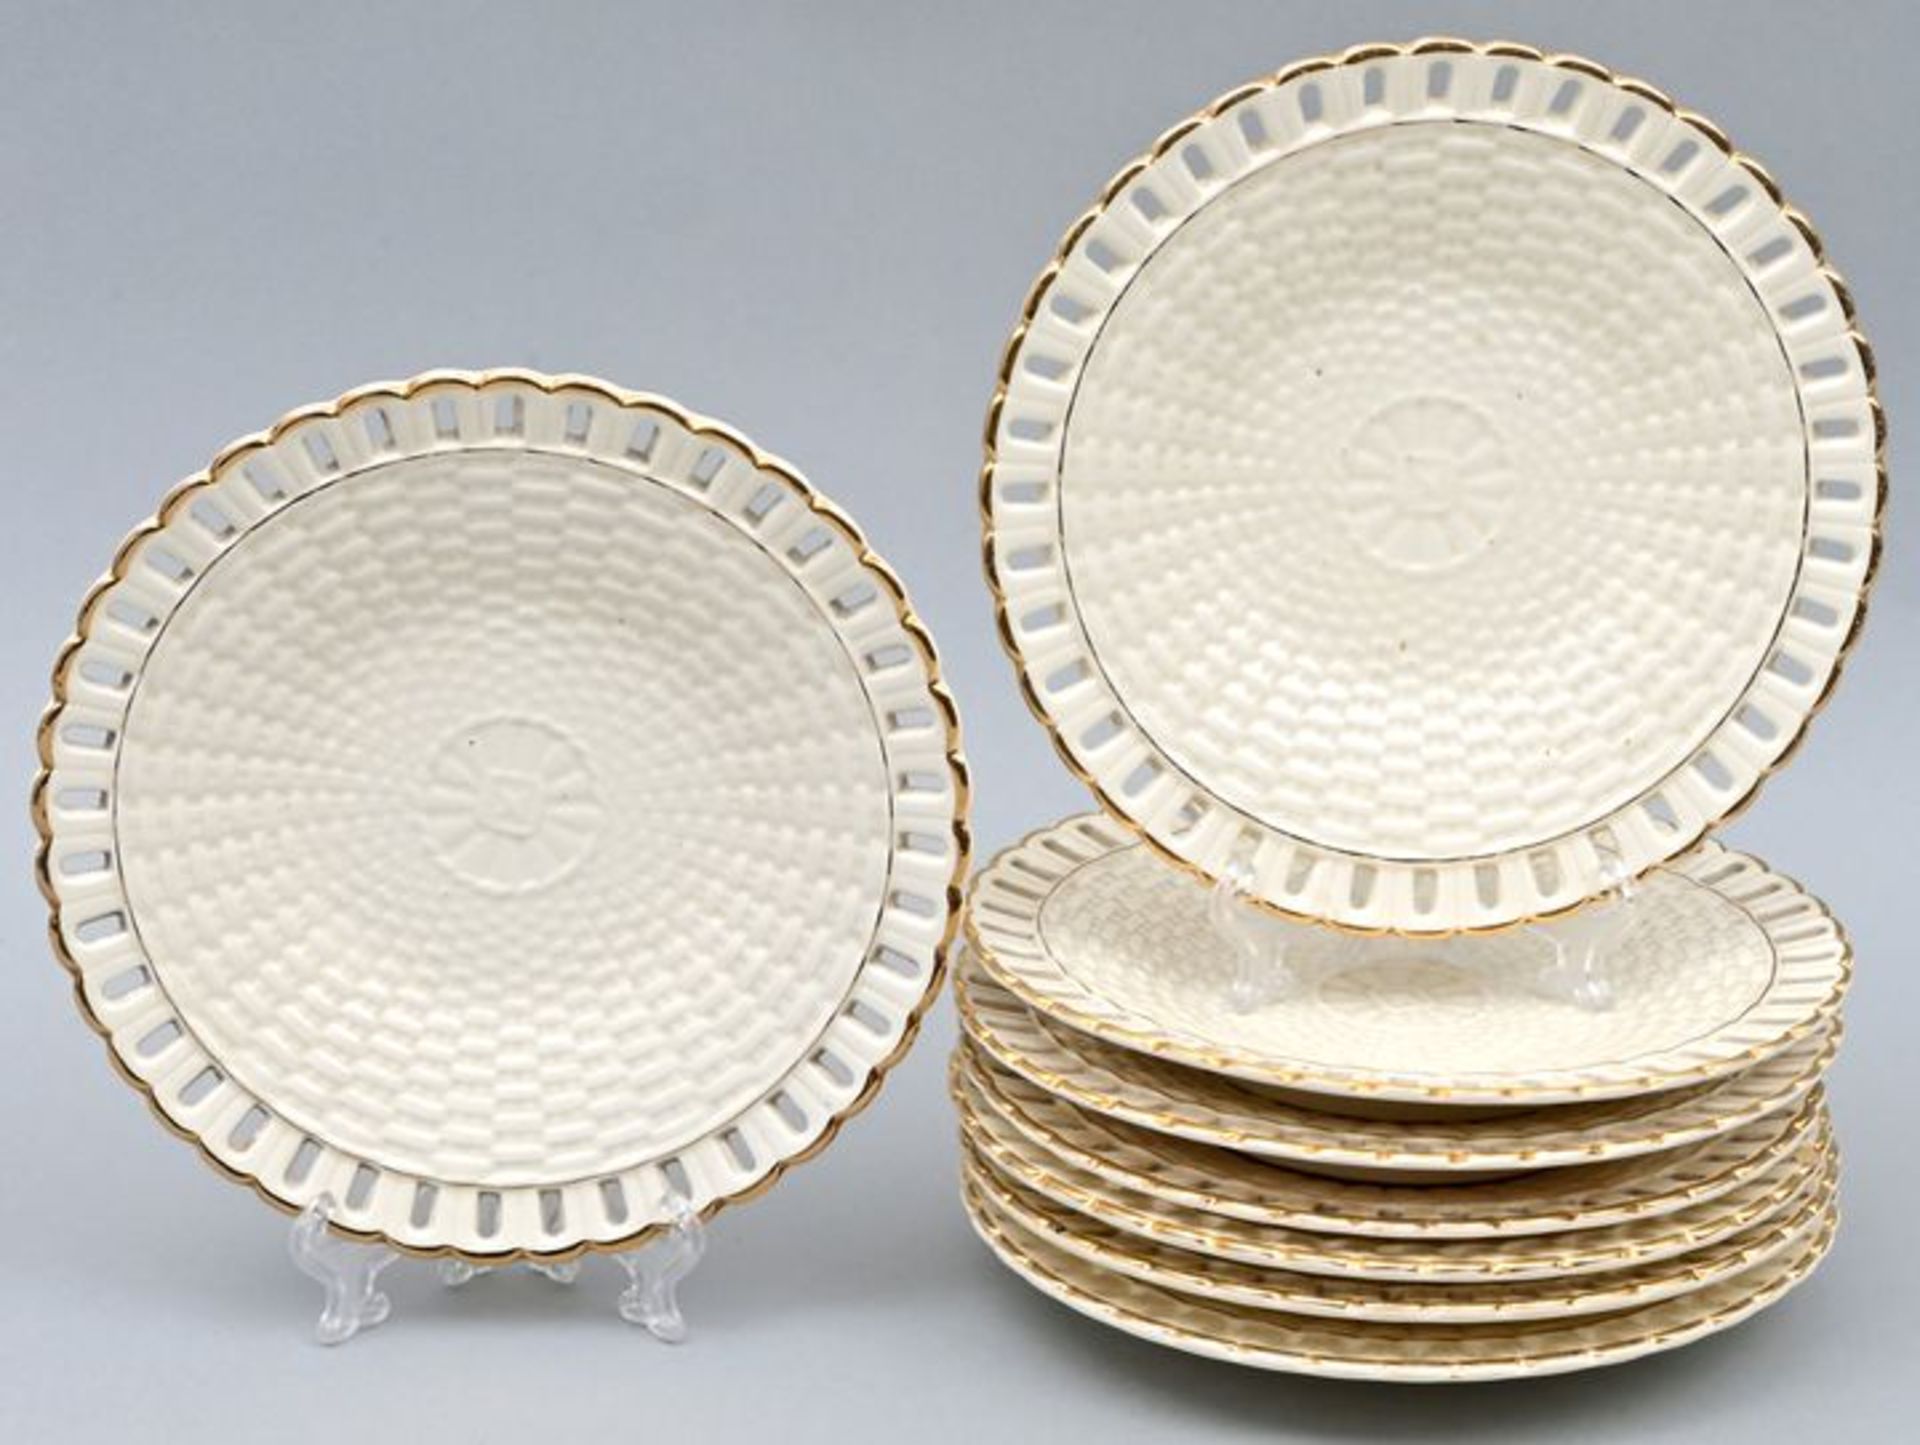 Acht Teller, Wächtersbach / Eight plates, Wächtersbach